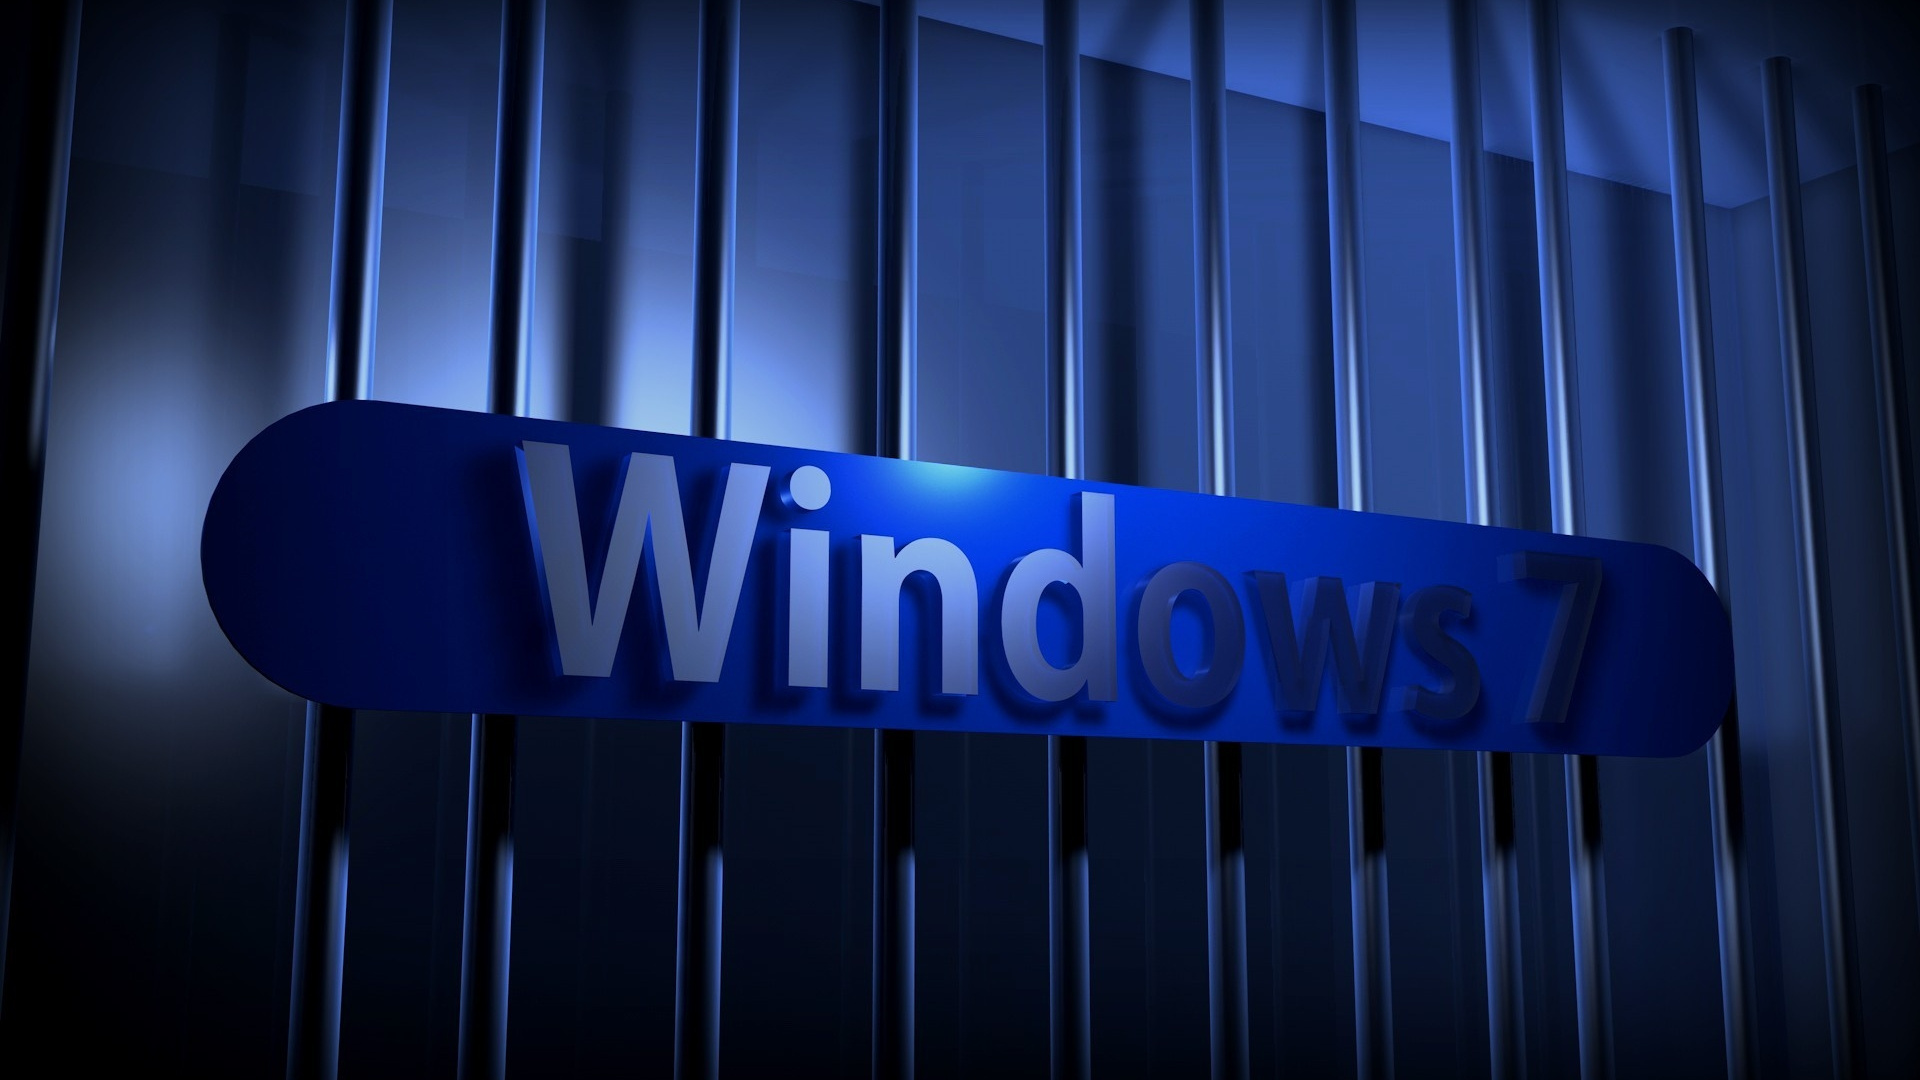 Windows 7, Microsoft Windows, Blau, Licht, Firmenzeichen. Wallpaper in 1920x1080 Resolution